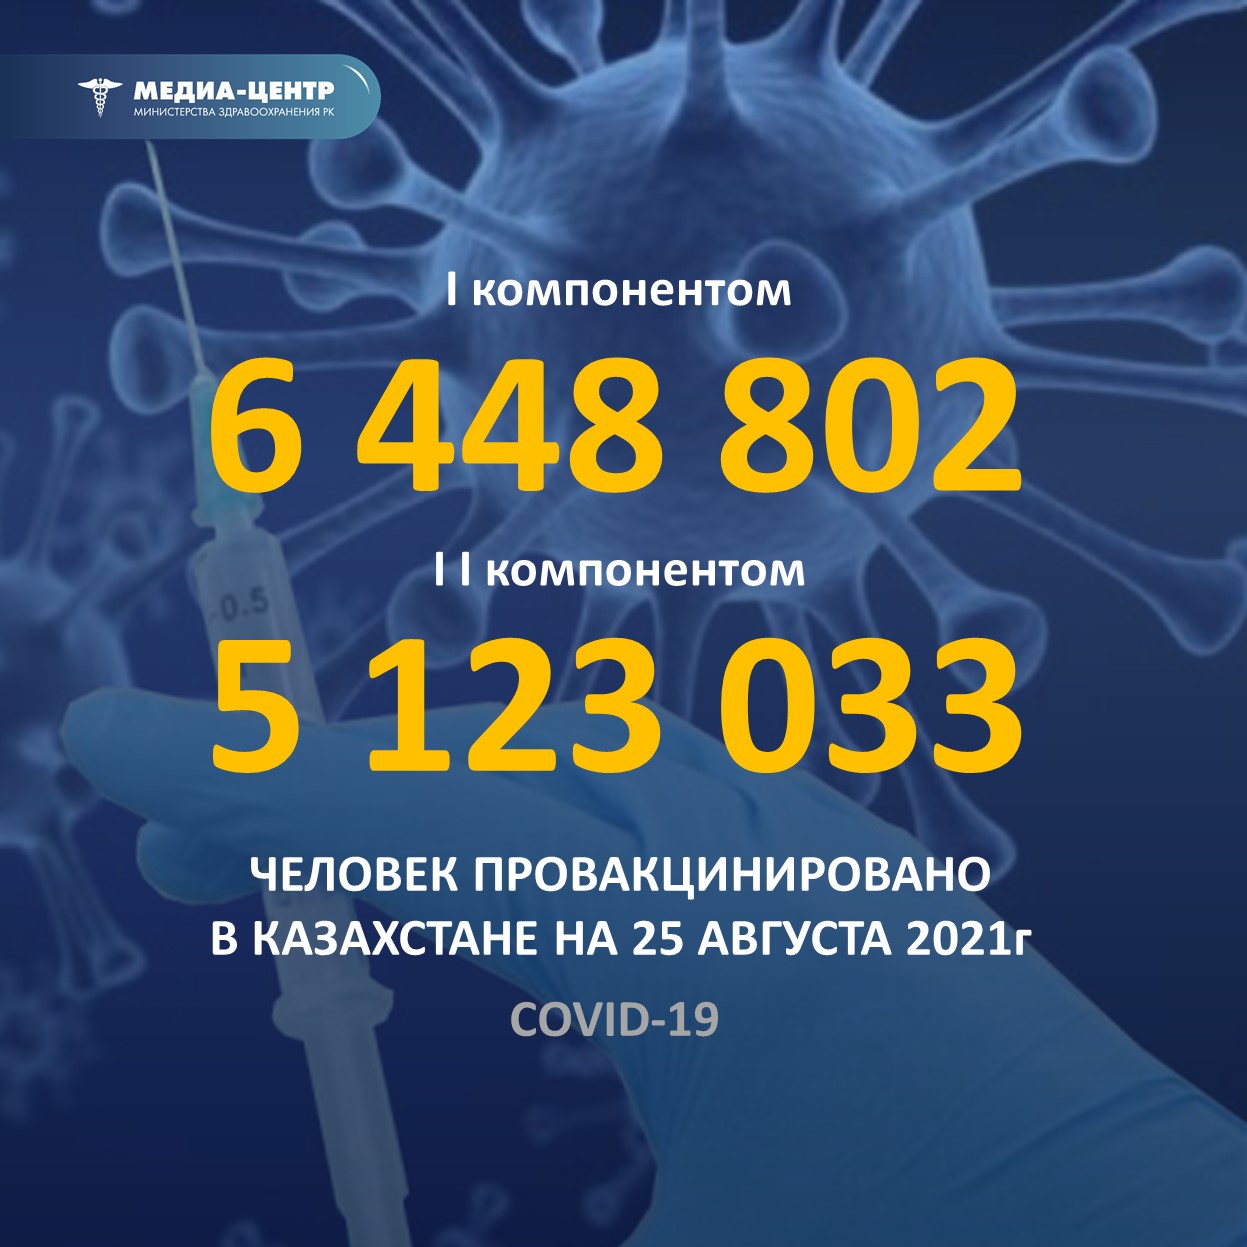 I компонентом 6 448 802 человек провакцинировано в Казахстане на 25 августа 2021 г, II компонентом 5 123 033 человек.